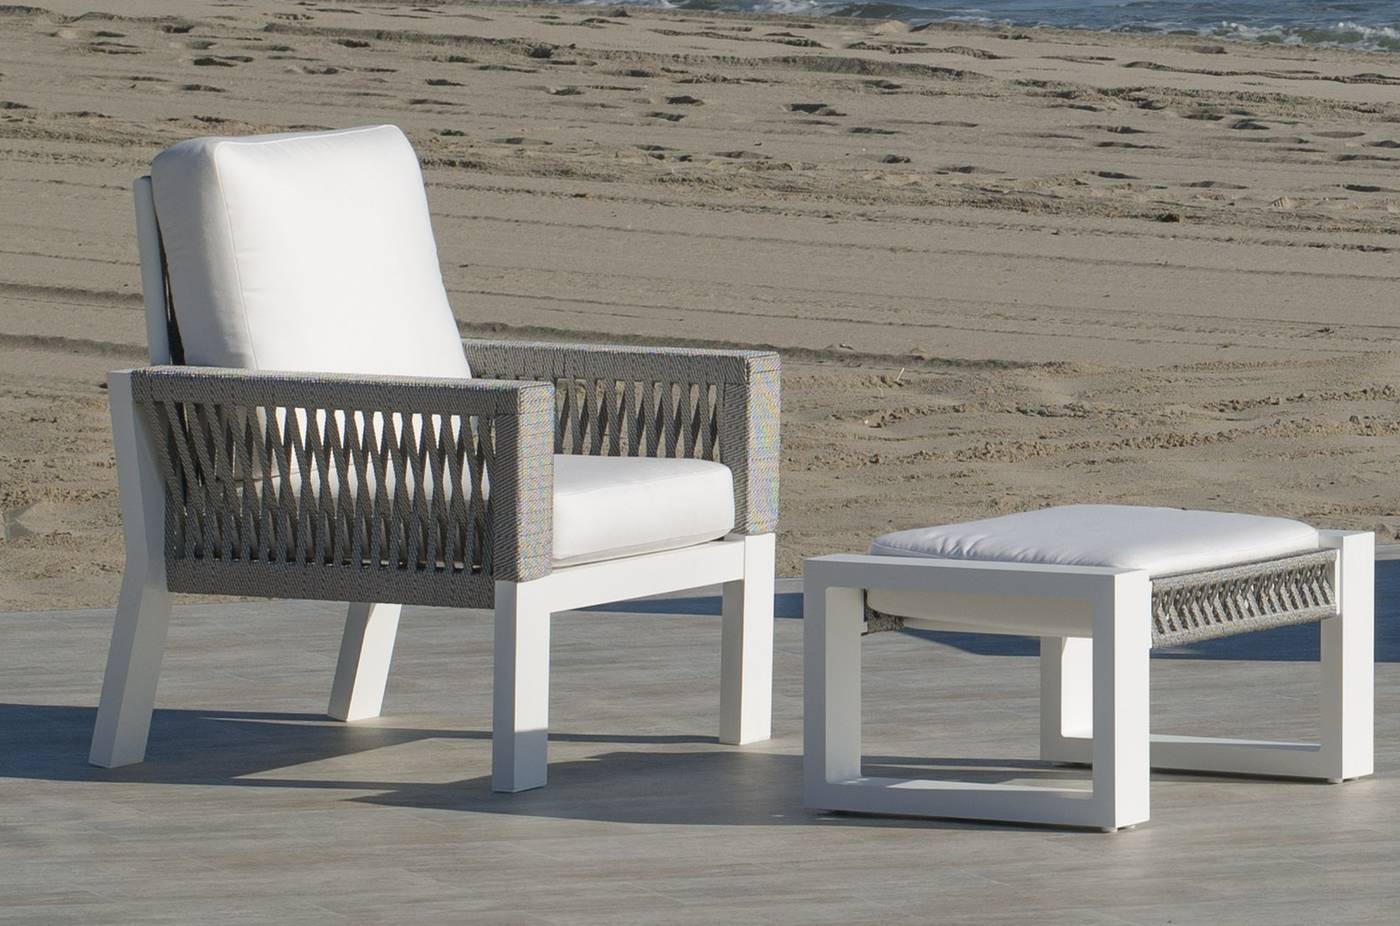 Set Aluminio Estambul-9 - Conjunto aluminio-cuerda: 1 sofá de 2 plazas + 2 sillones + 1 mesa de centro + 2 taburetes. Disponible en color blanco, gris, marrón o champagne.